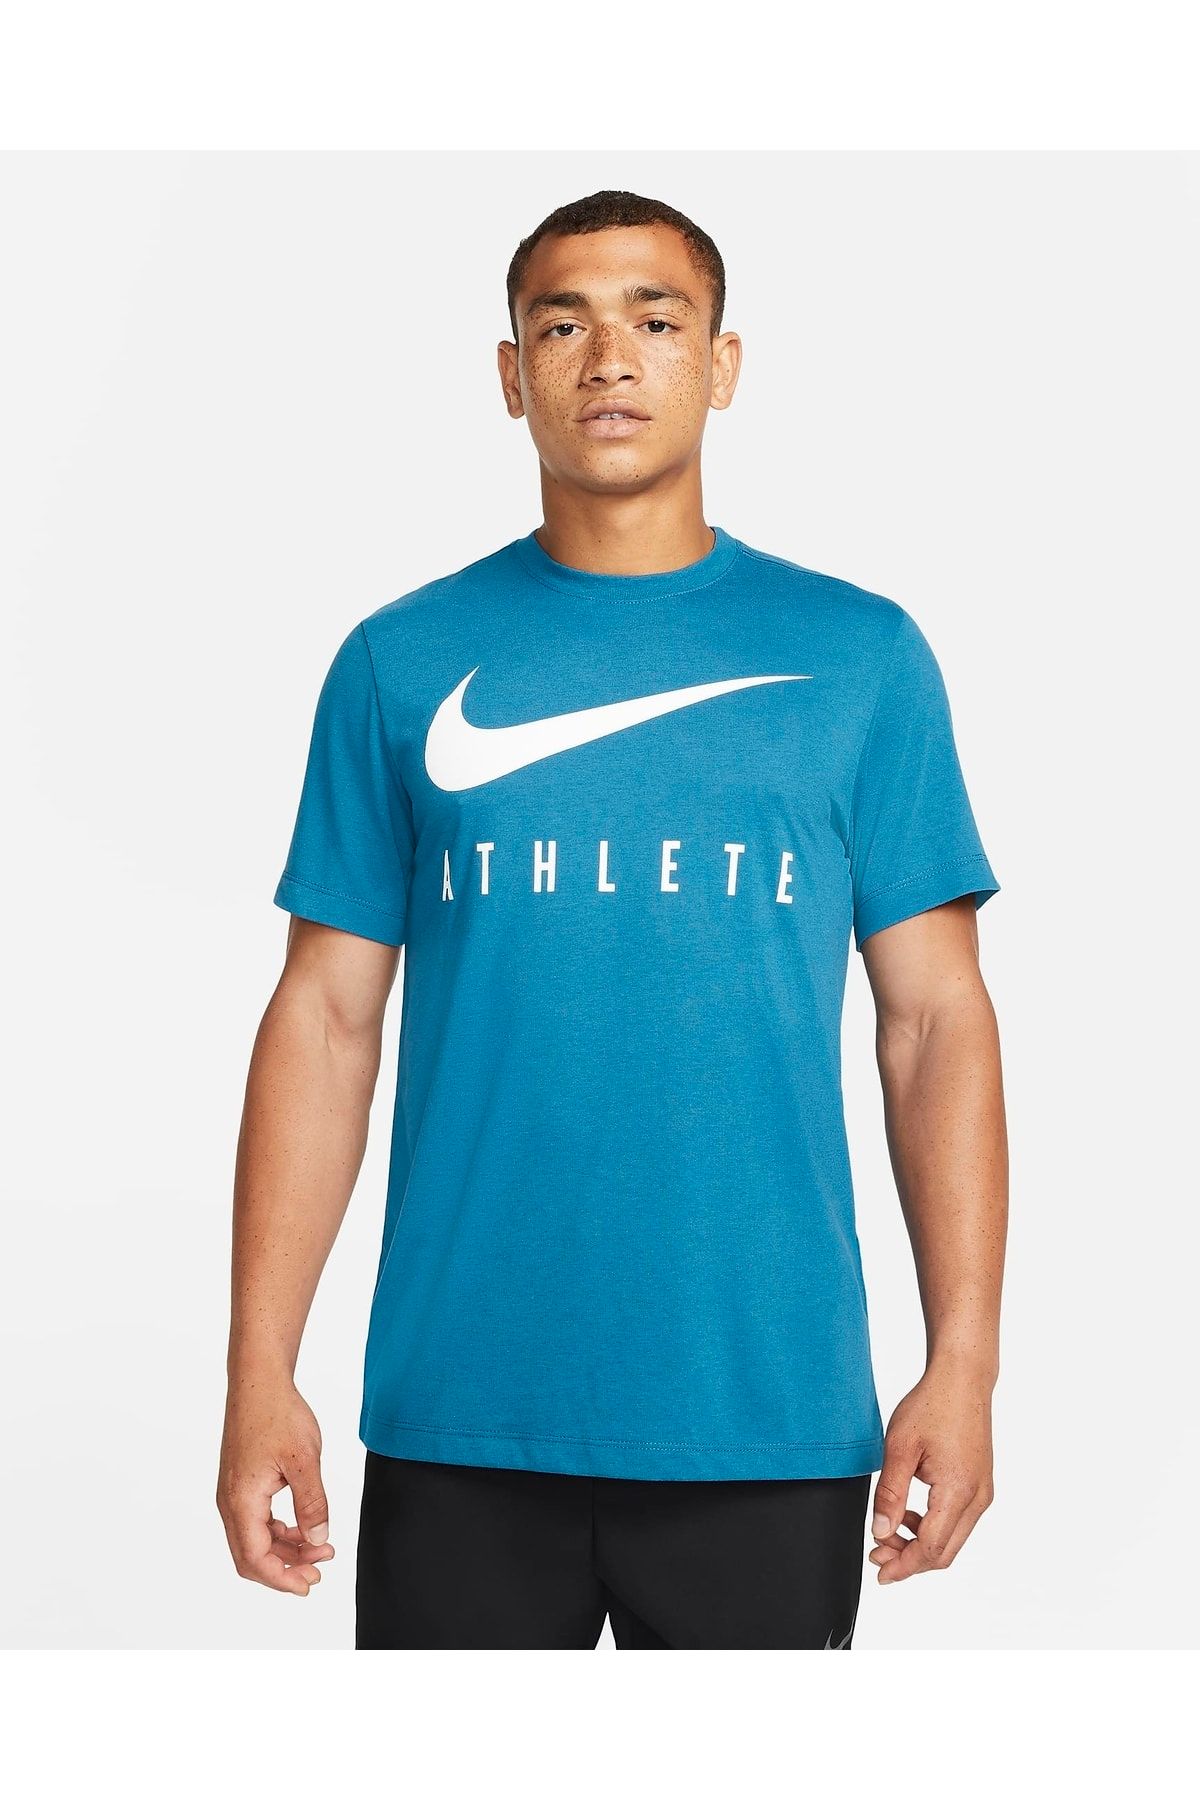 Nike Dri-fıt Unisex Antrenman Tişörtü